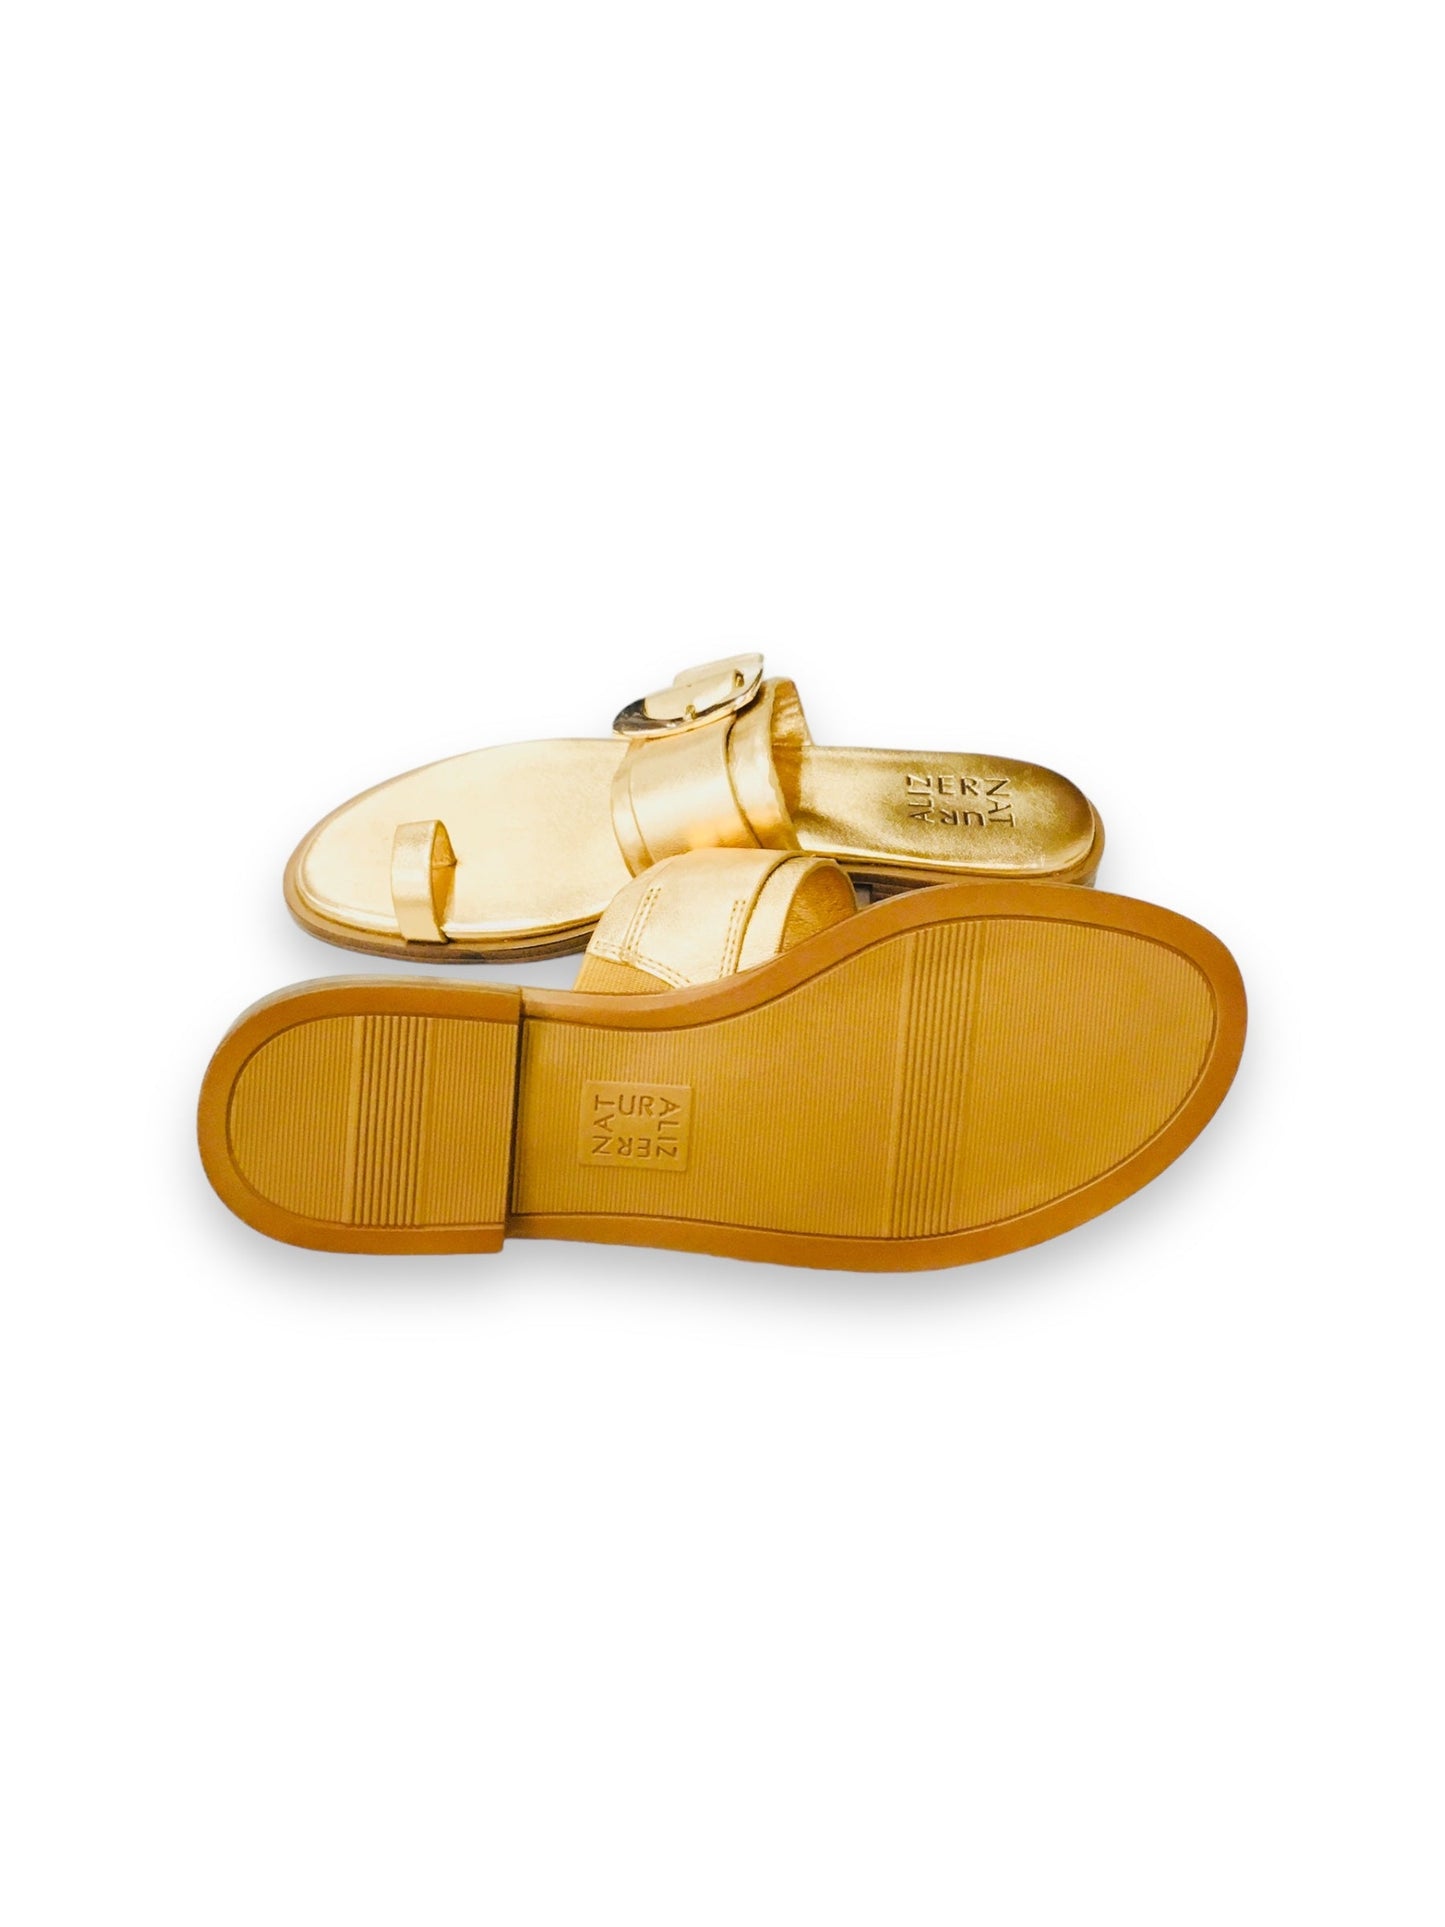 Gold Sandals Flip Flops Naturalizer, Size 7.5